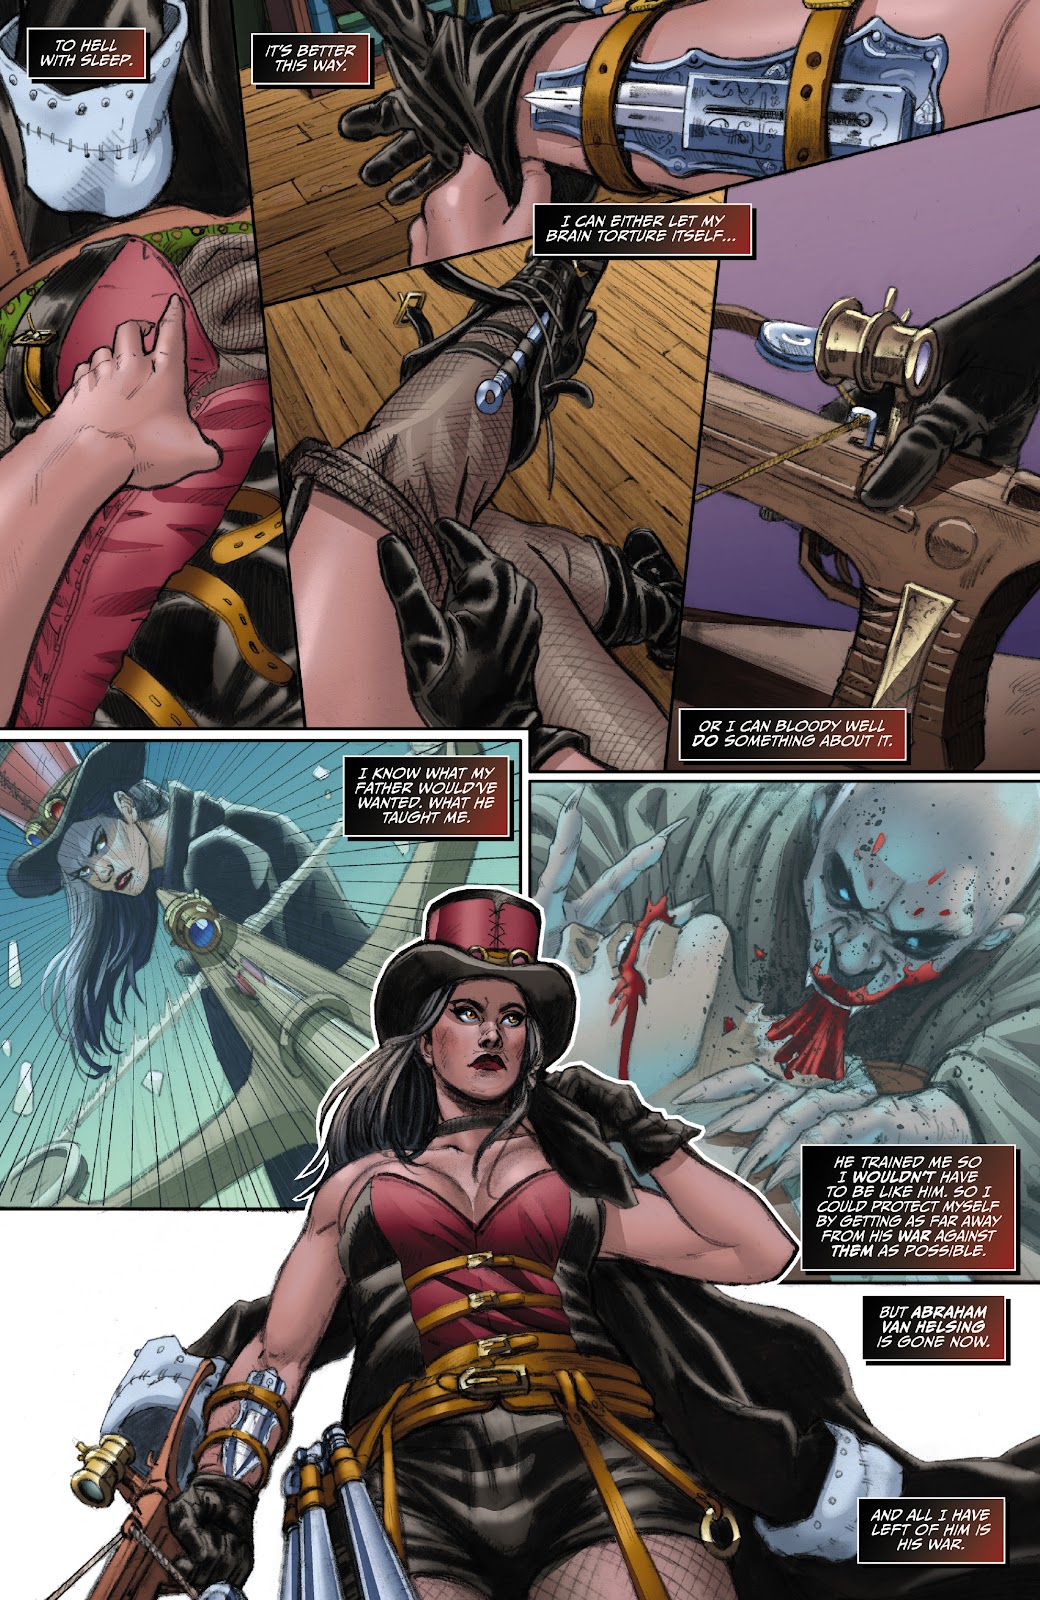 Van Helsing: Vampire Hunter issue 1 - Page 7